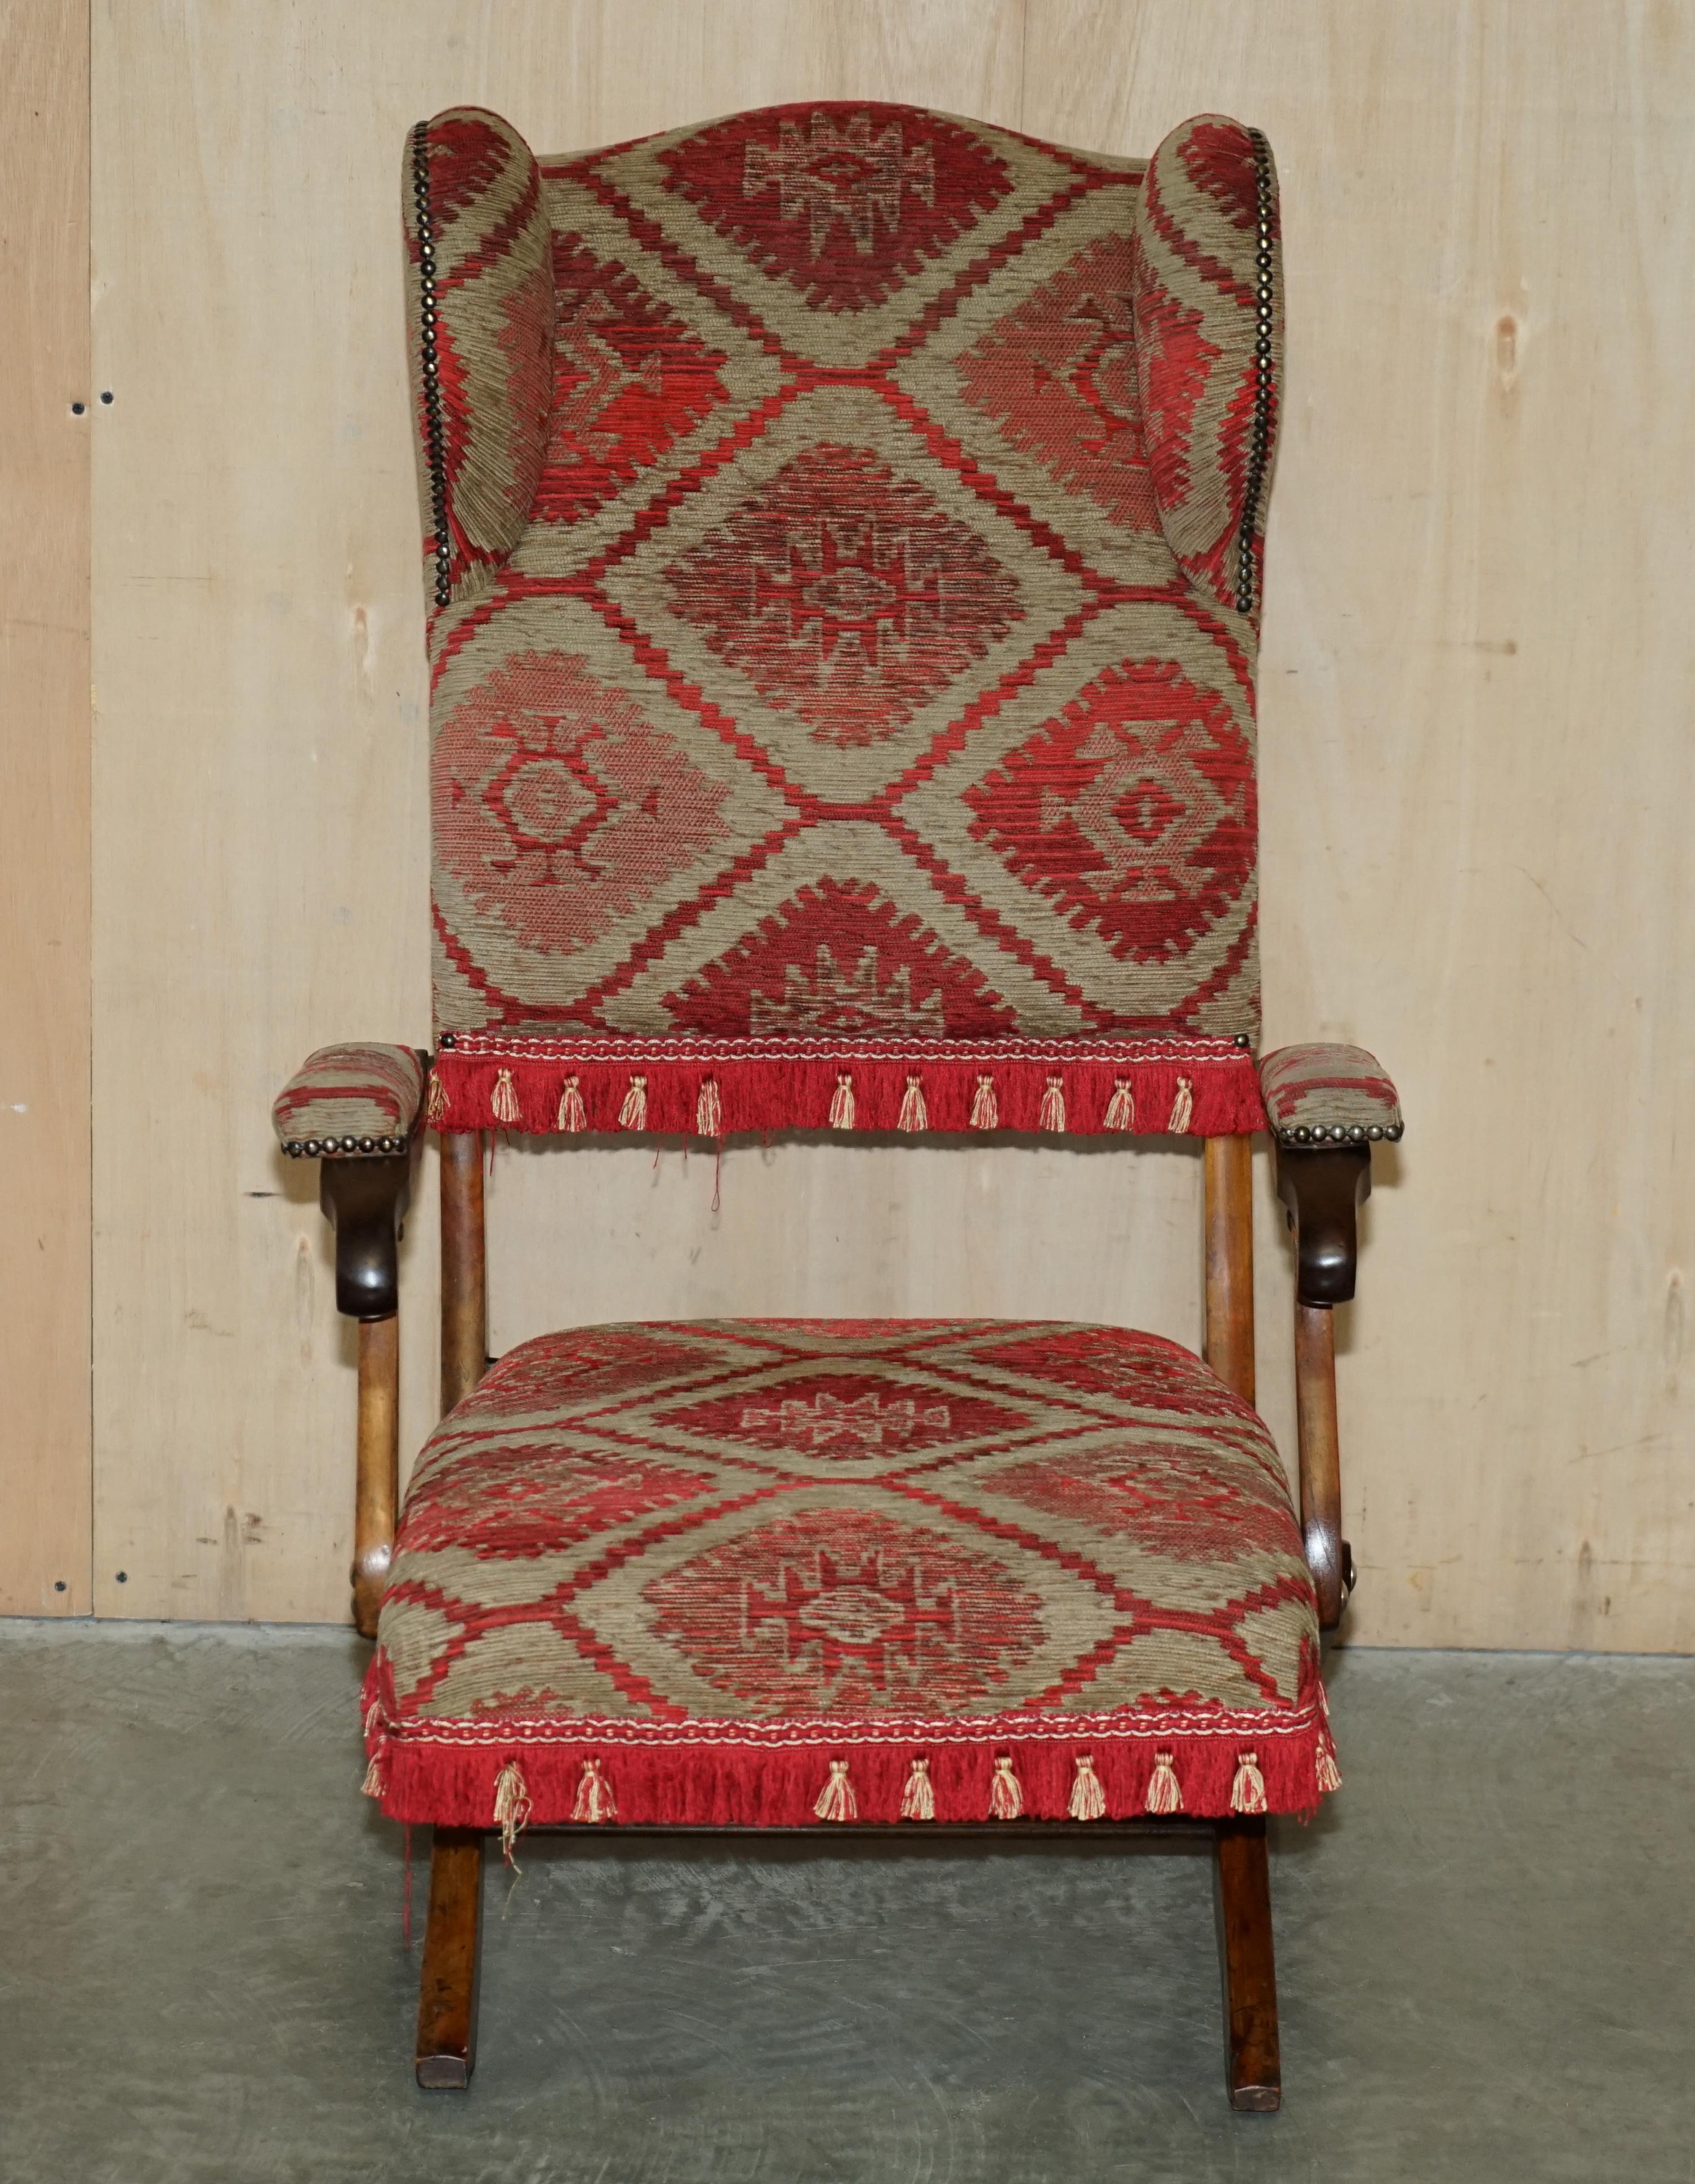 Nous sommes ravis de proposer à la vente cette sublime chaise pliante de campagne militaire d'origine victorienne, fabriquée à la main vers 1880 et recouverte de Kilim. 

Très belle chaise pliante Campaigner de collection. C'est le seul que j'ai